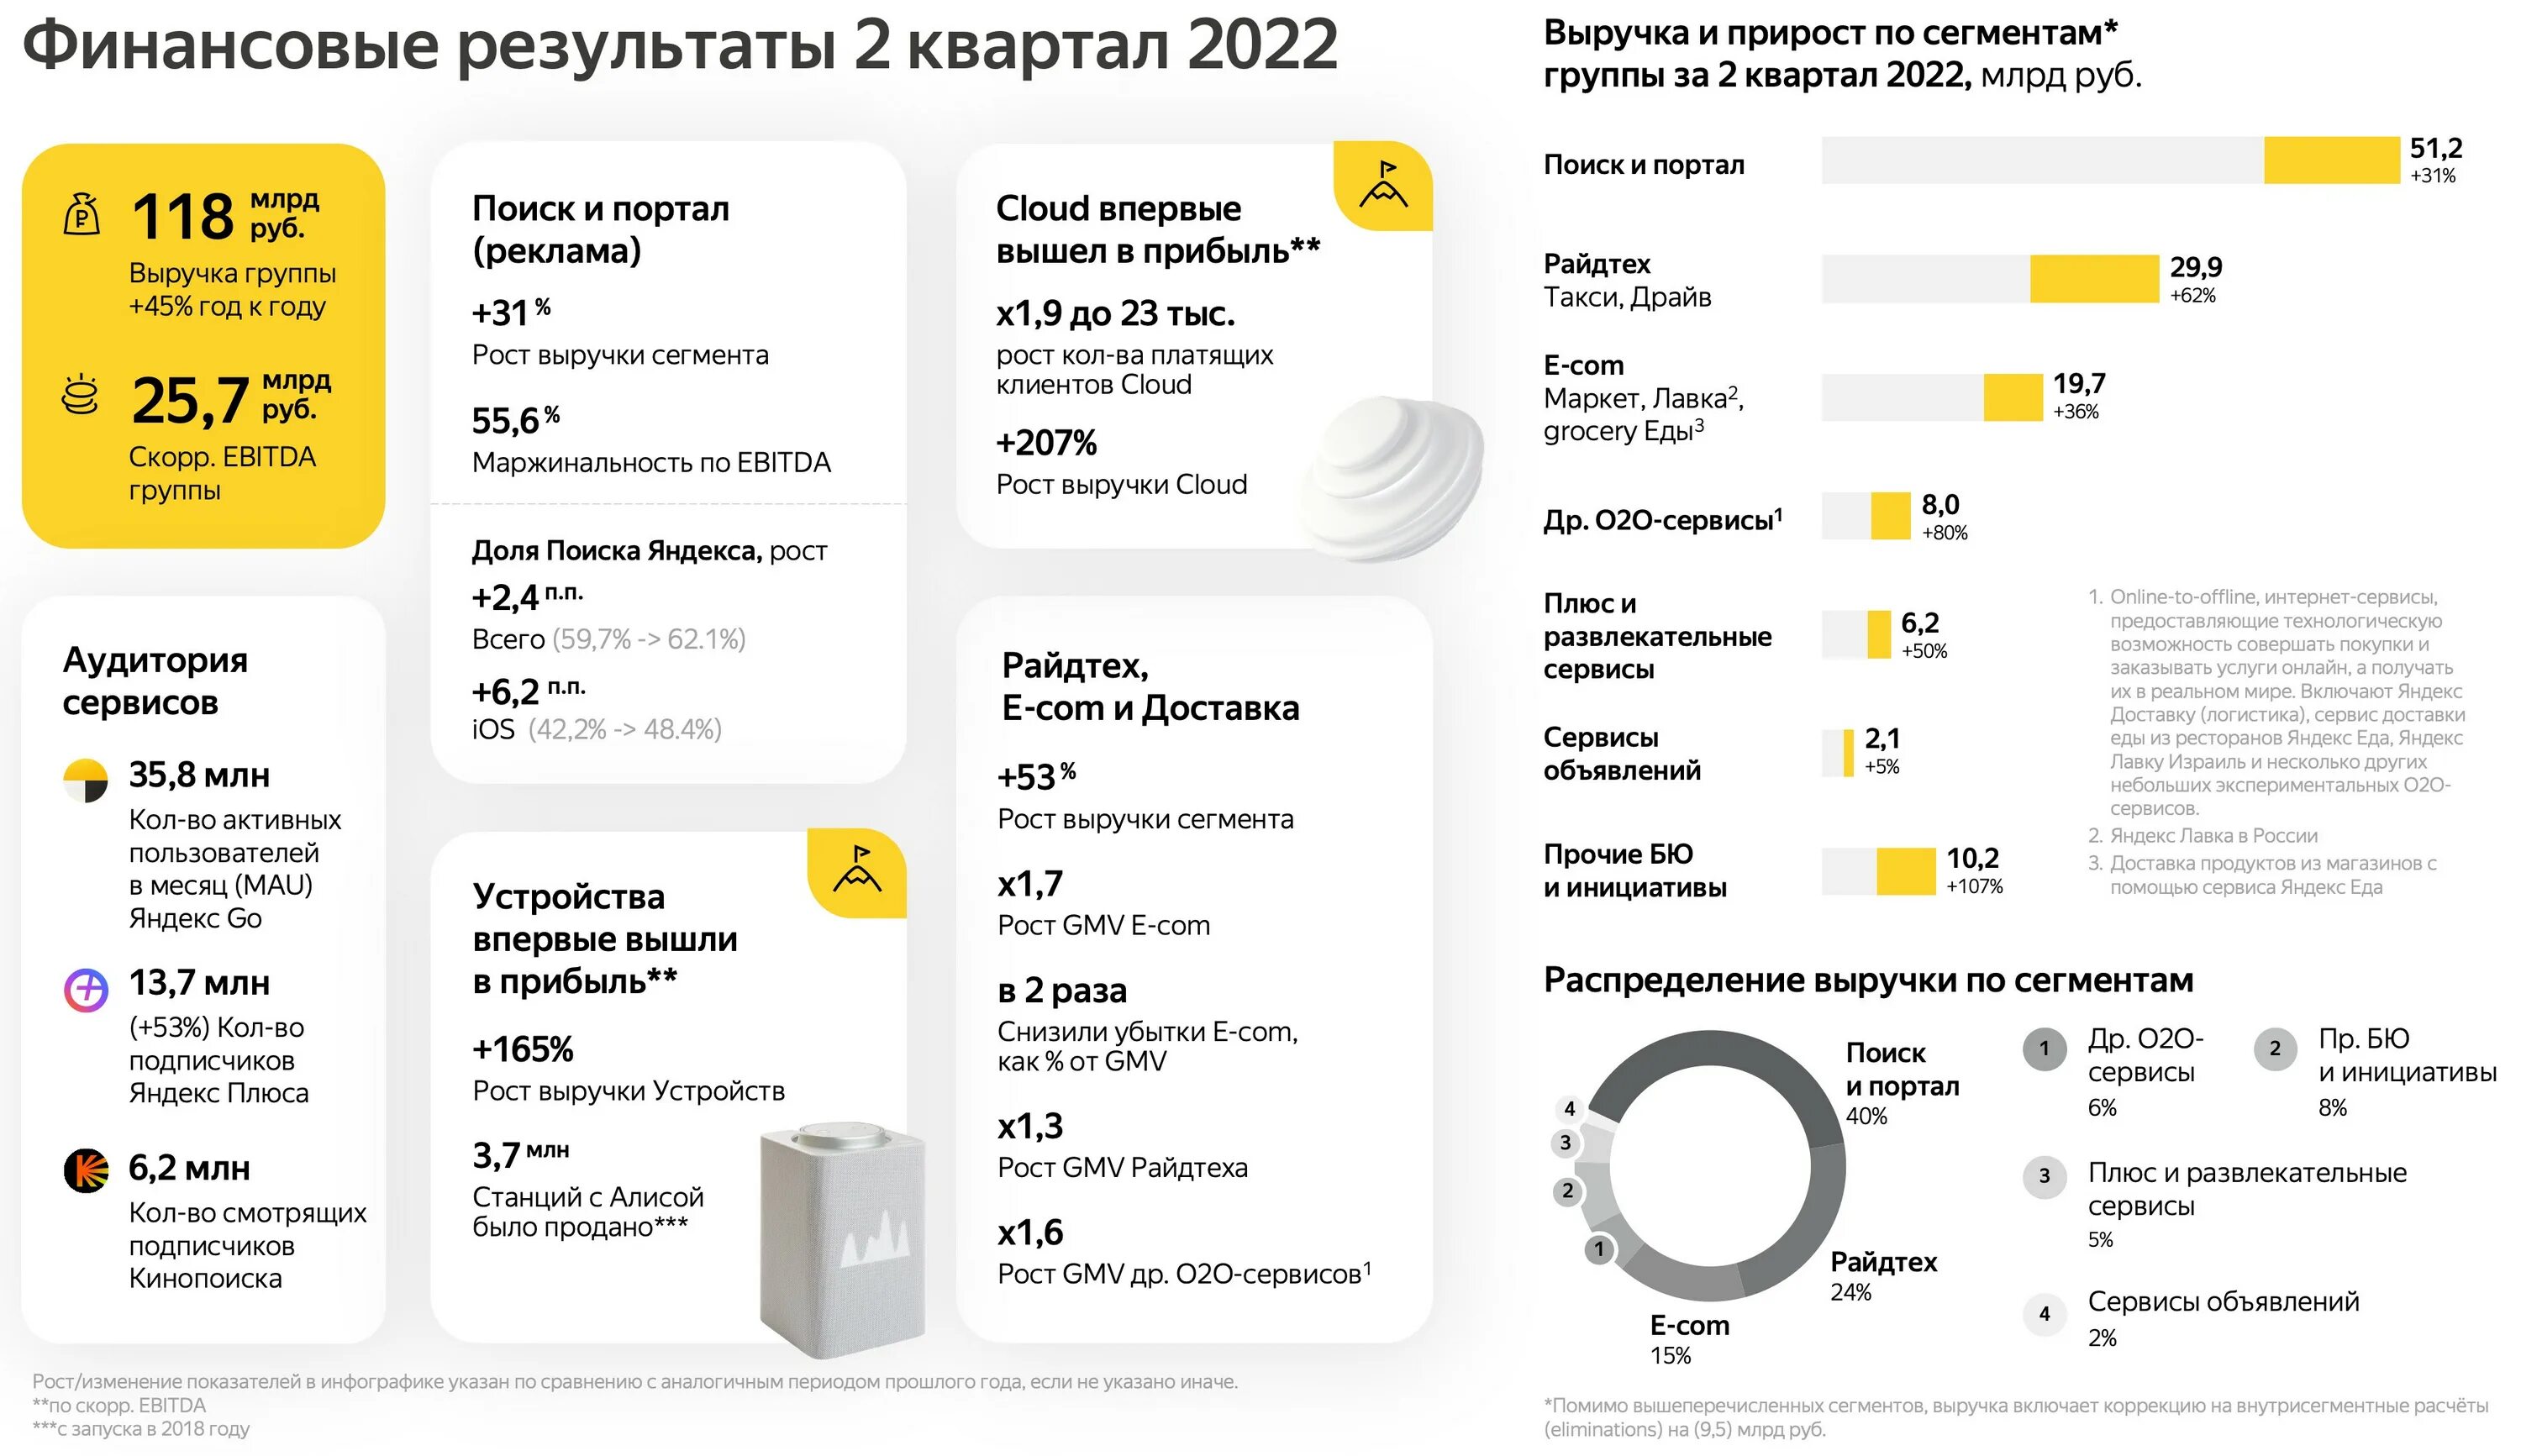 В первом квартале прошлого года. Прибыль Яндекса 2022. 2 Квартал 2022 года.